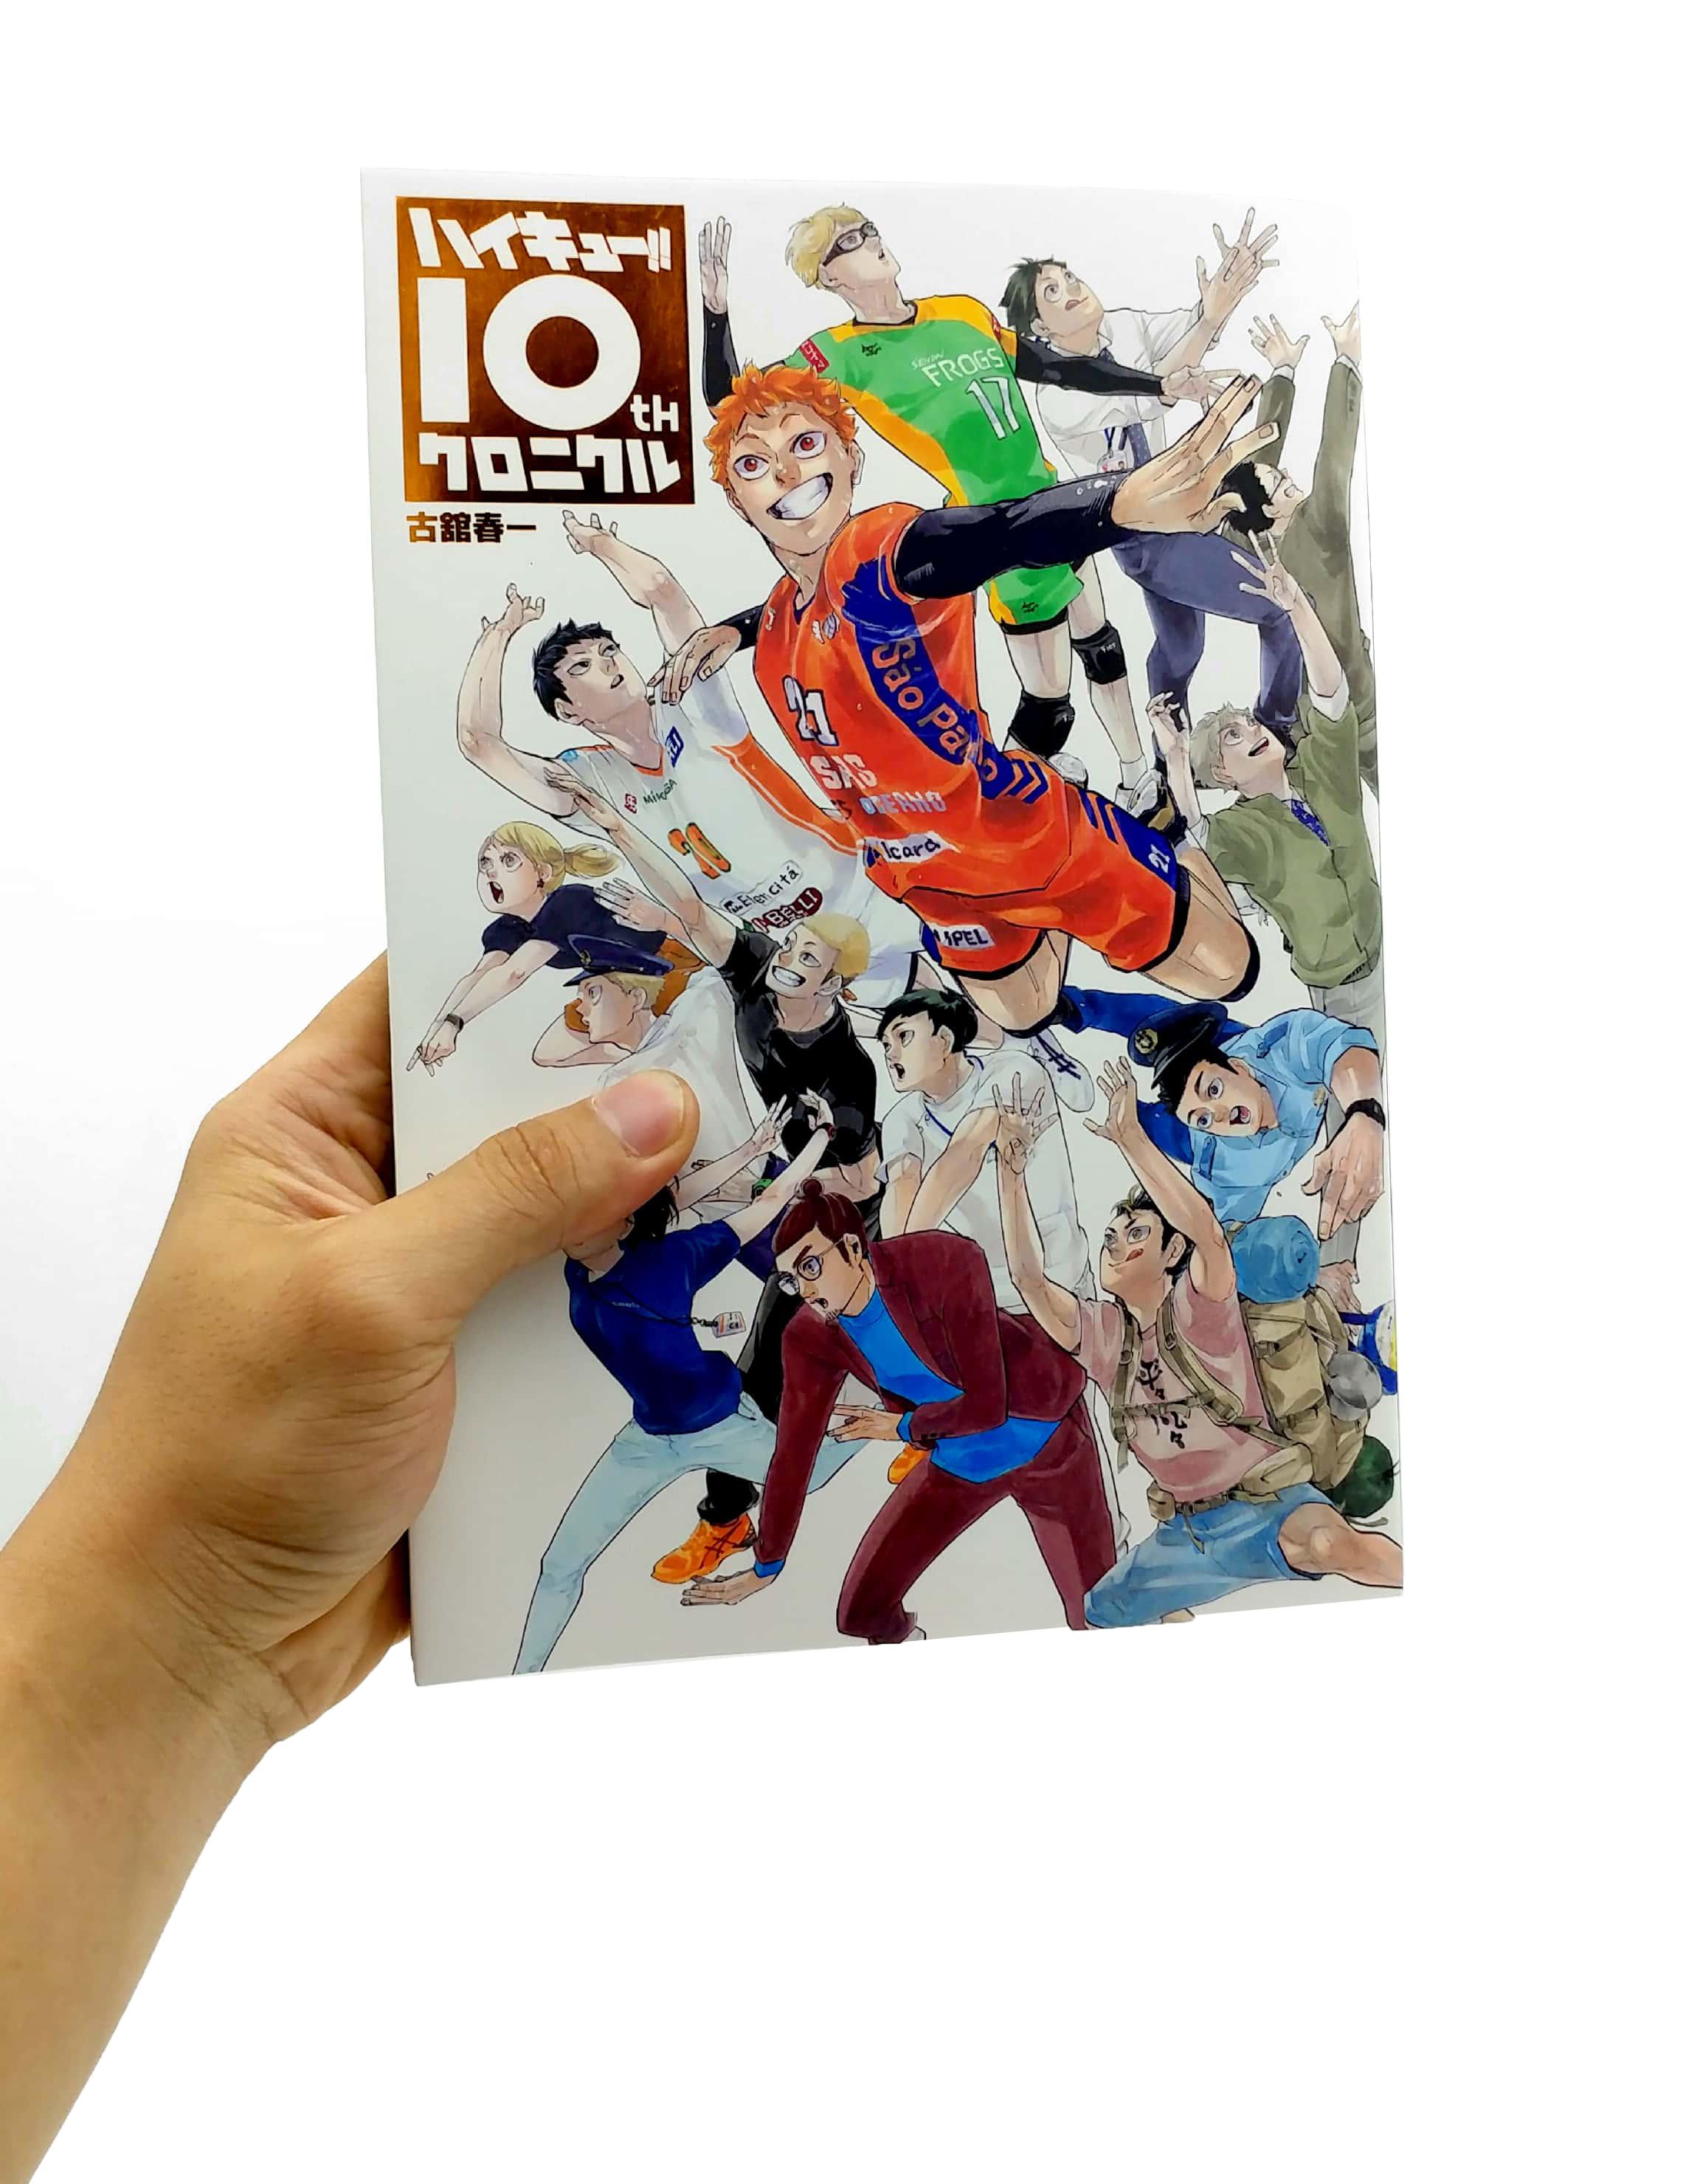 Haikyu!! 10th Chronicle (Japanese Edition)